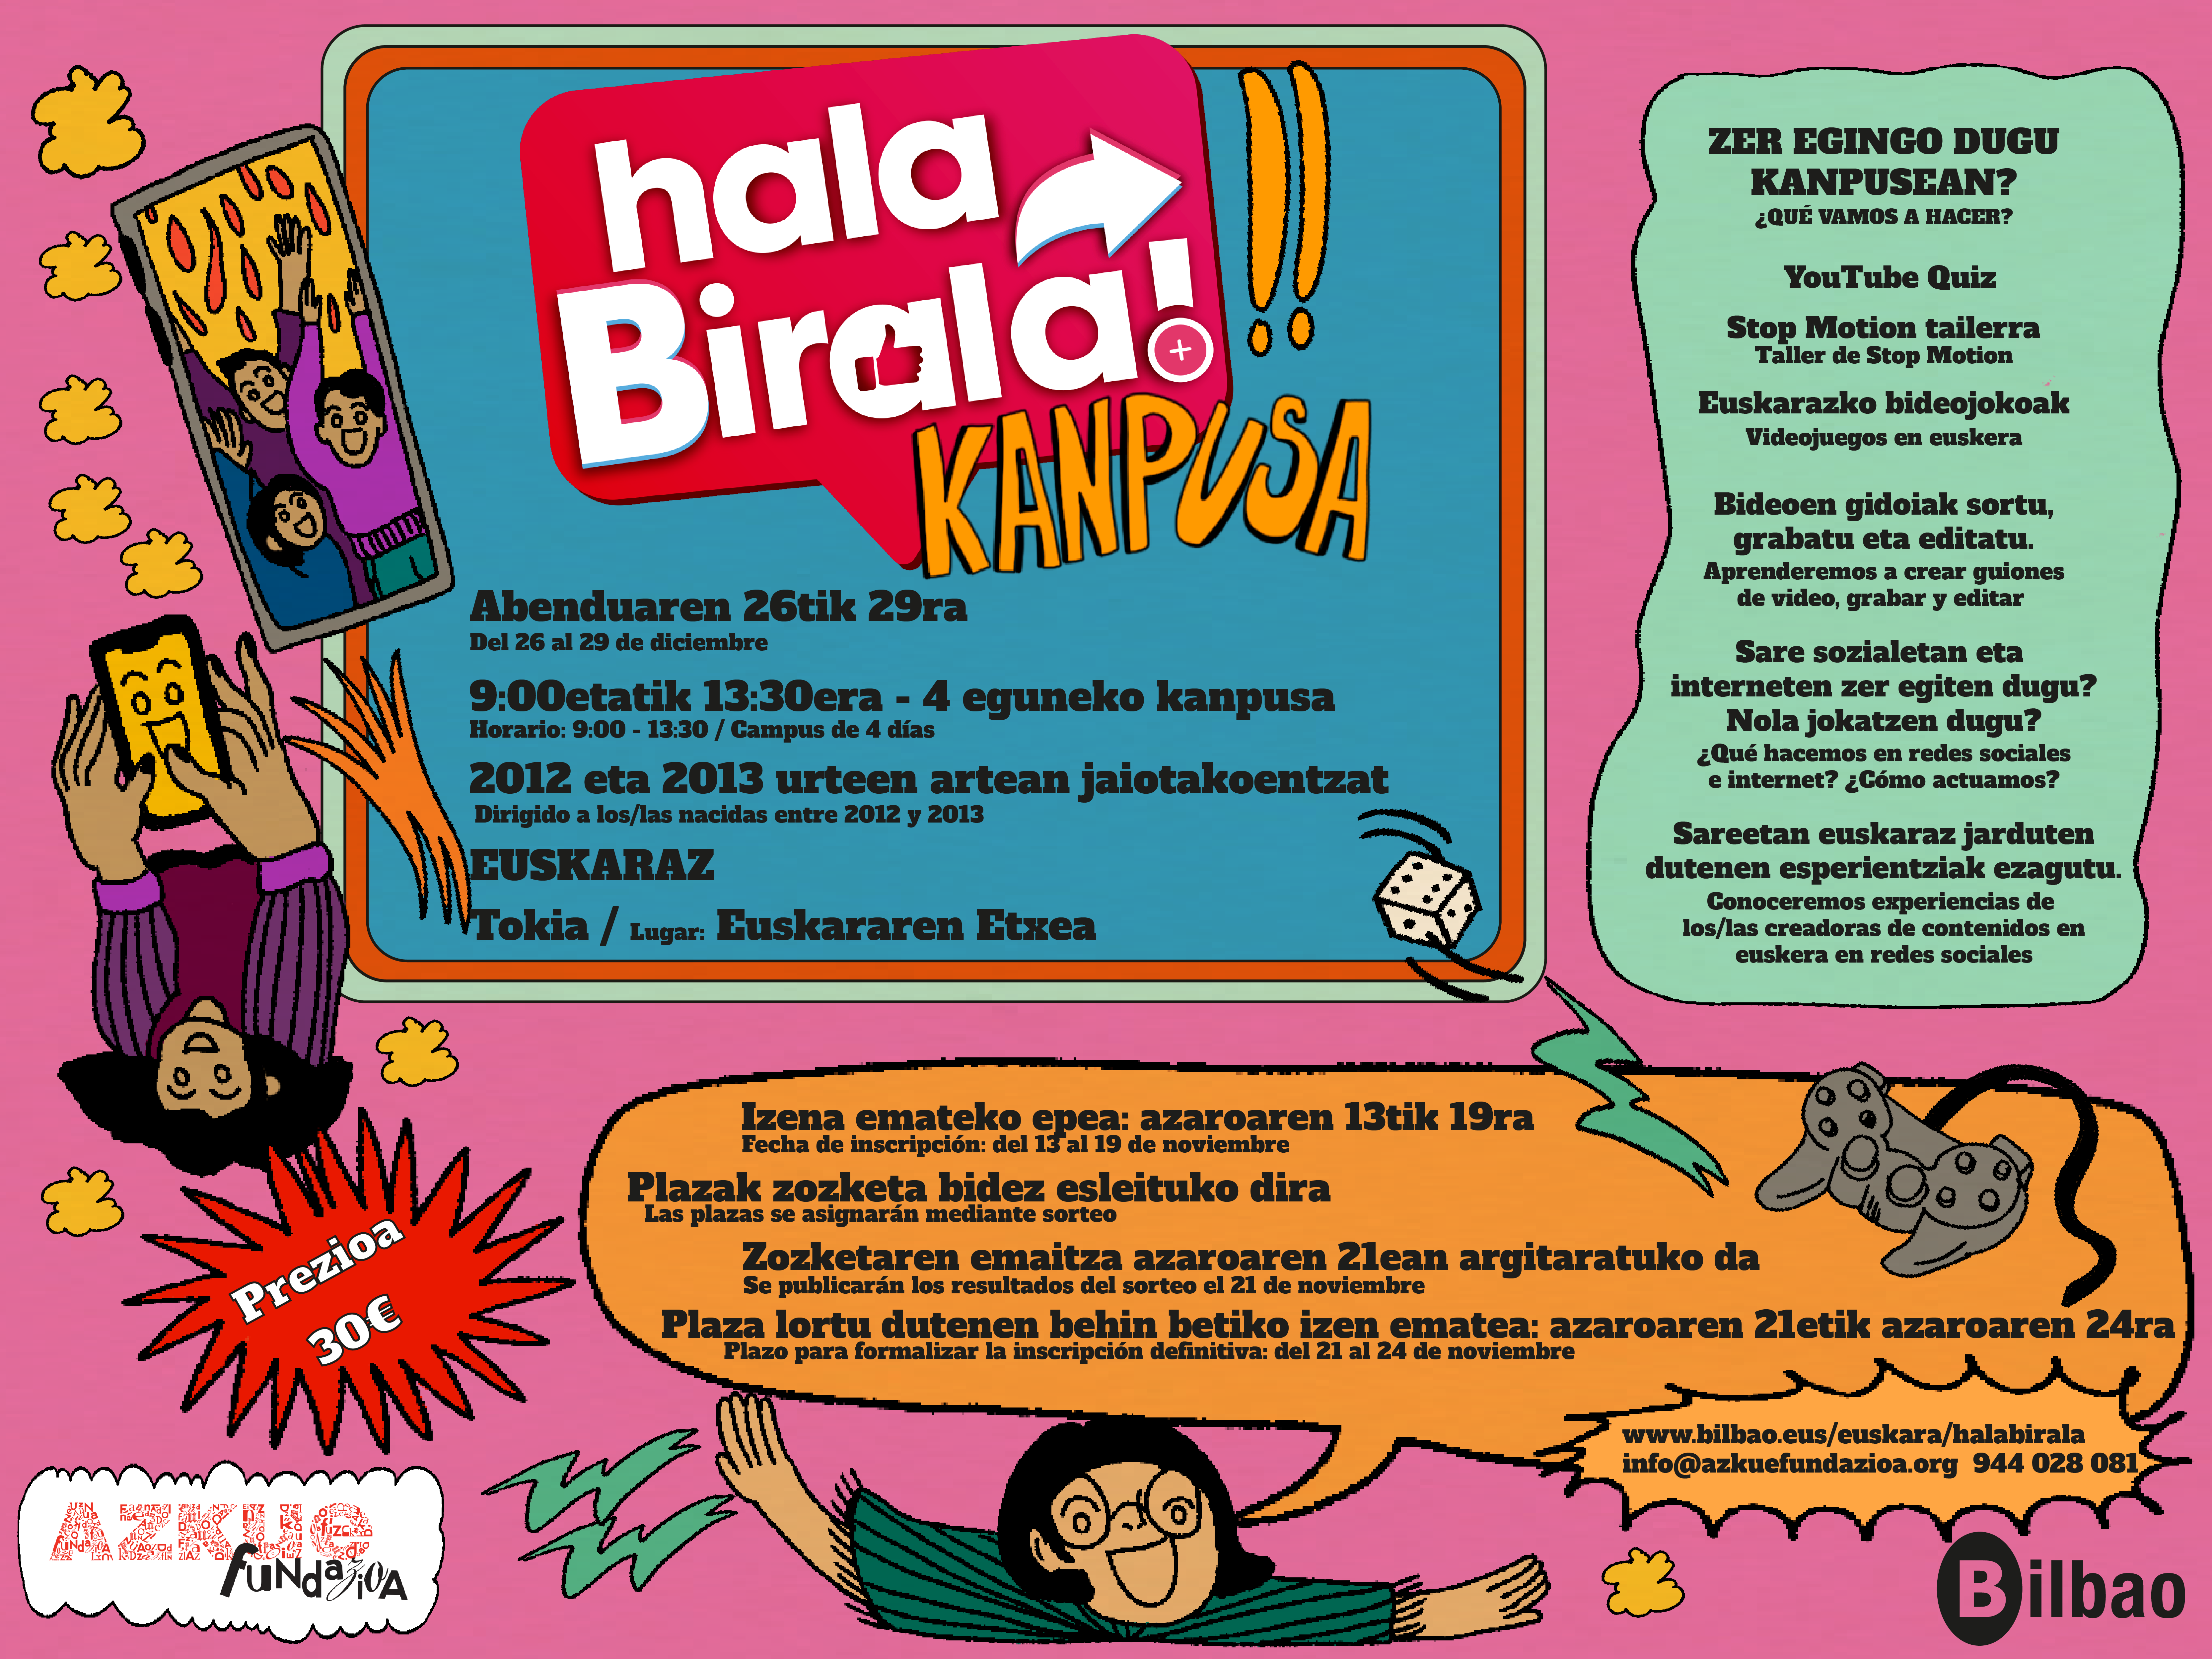 “Hala, Birala! kanpusa” kultura digitalari buruzko 4 eguneko kanpusa euskaraz abenduan